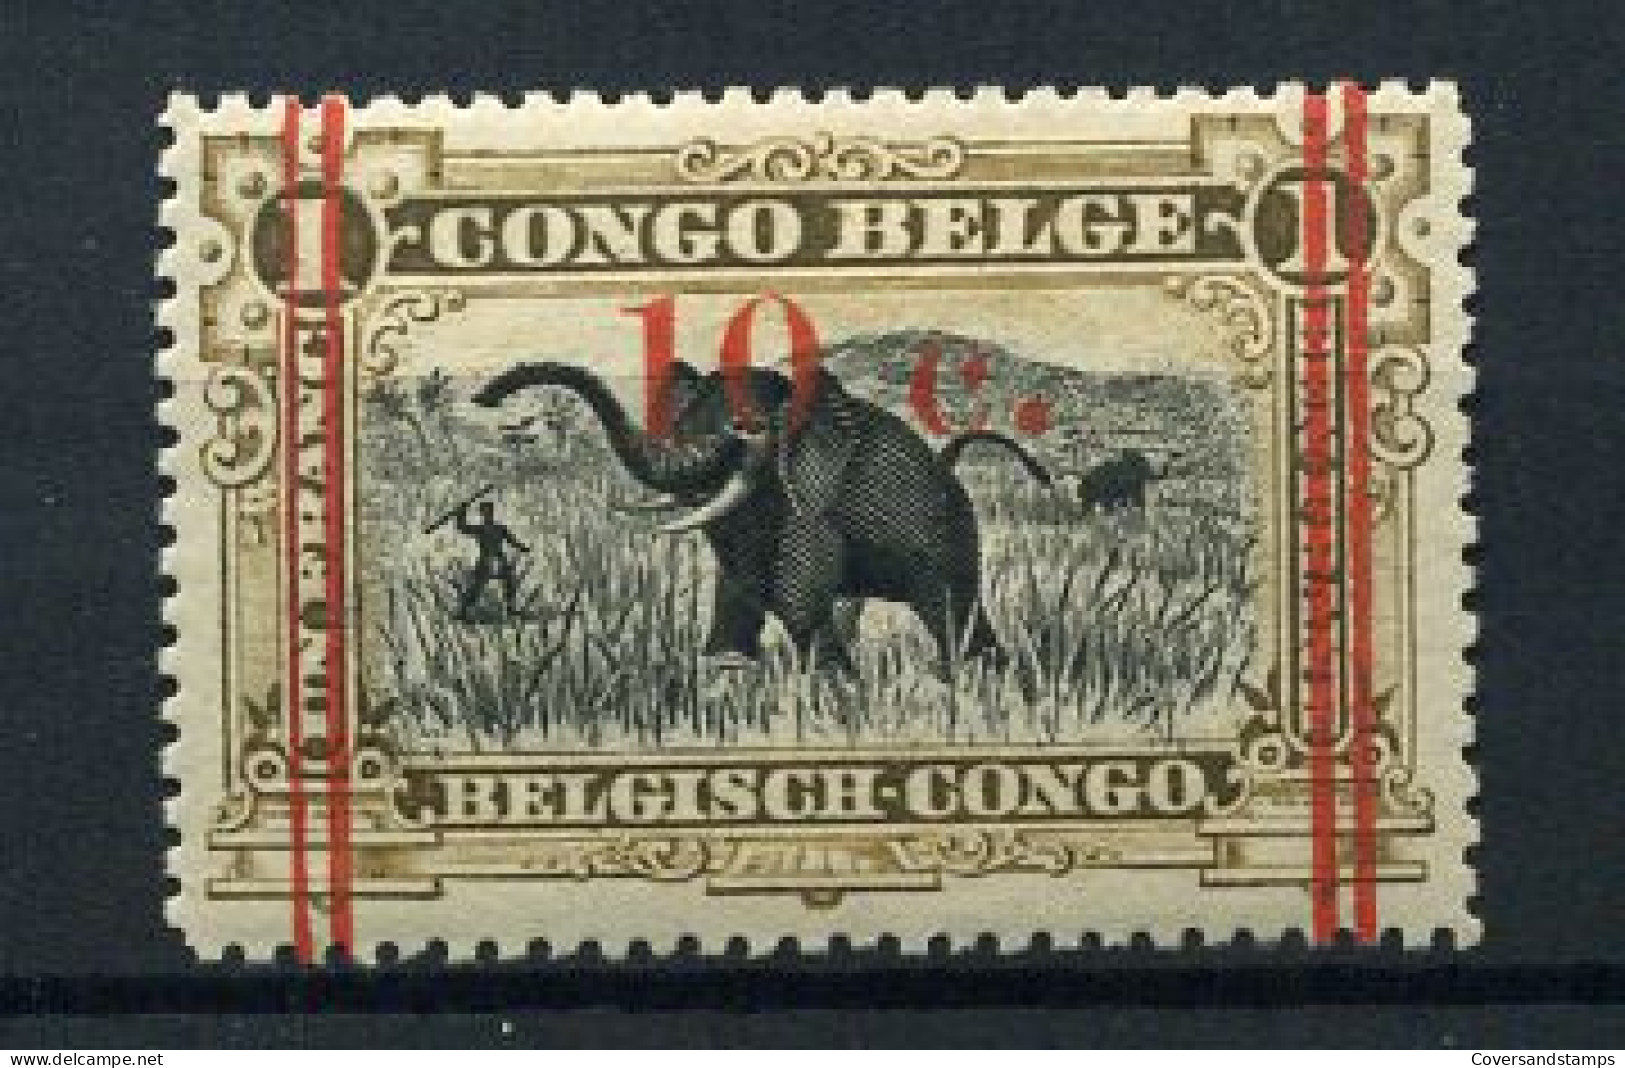 Belgisch Congo / Congo Belge 101 - MH * - Ungebraucht